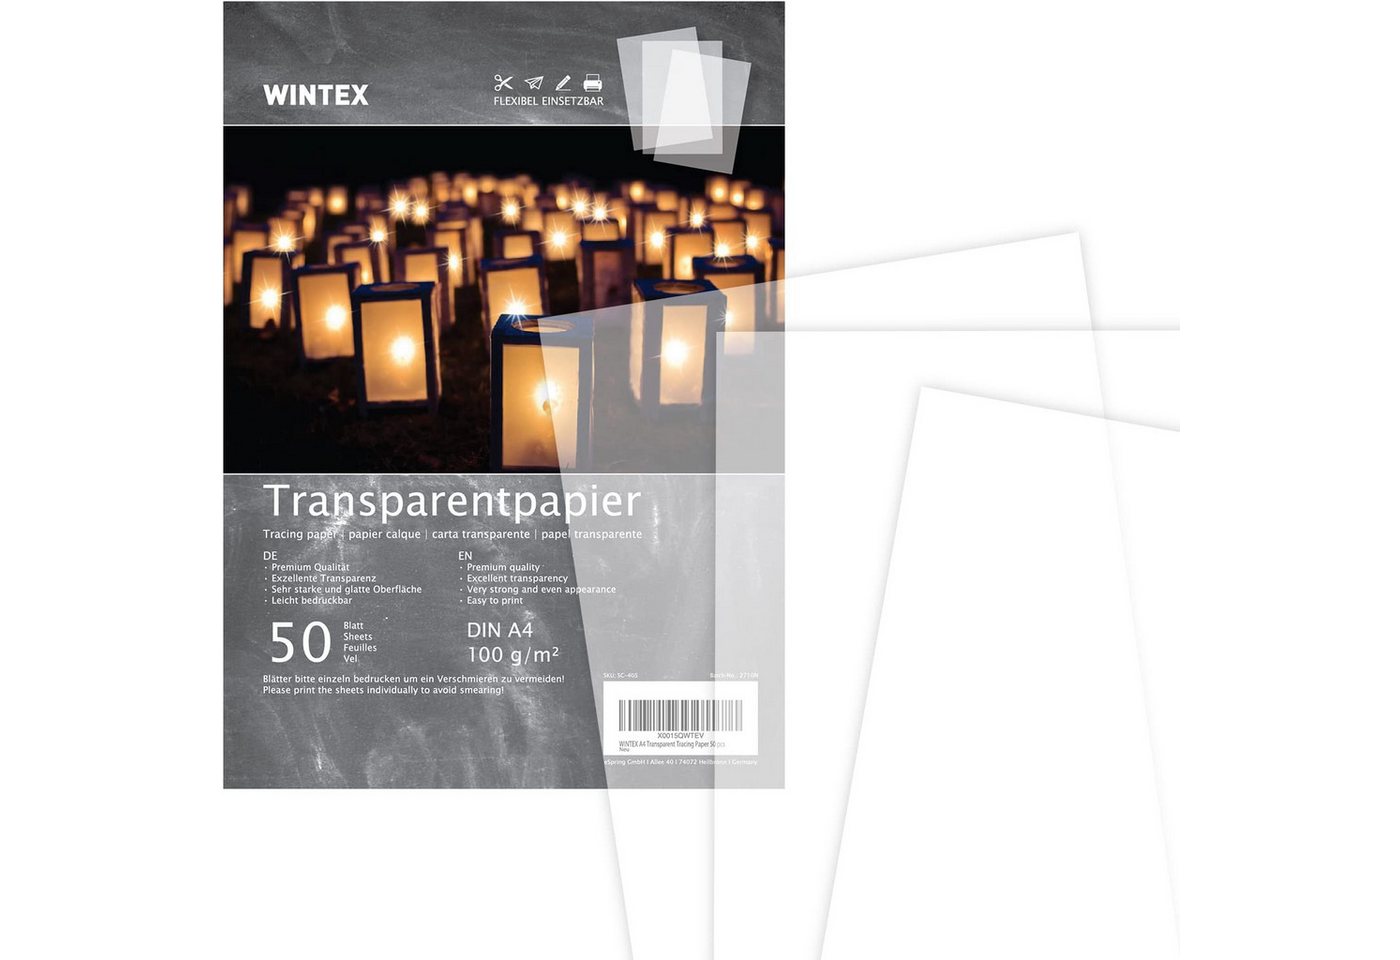 WINTEX Transparentpapier Transparentpapier A4 50 Blatt 100g/qm, Transparentpapier DIN A4 50 Blatt 100g/qm von WINTEX